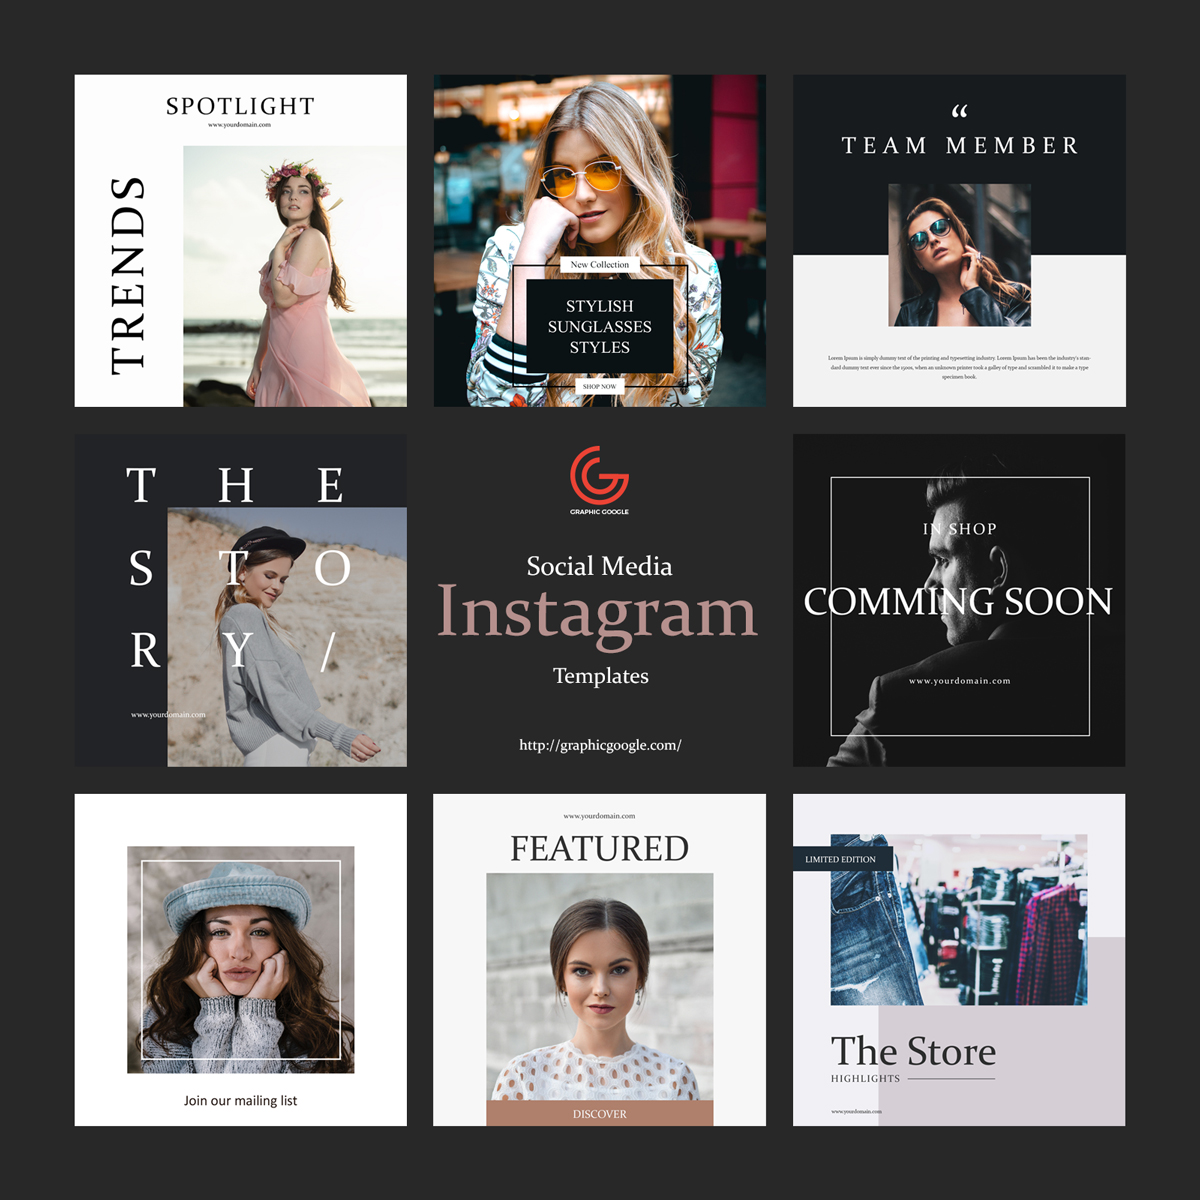 Free-8-Social-Media-Instagram-Templates